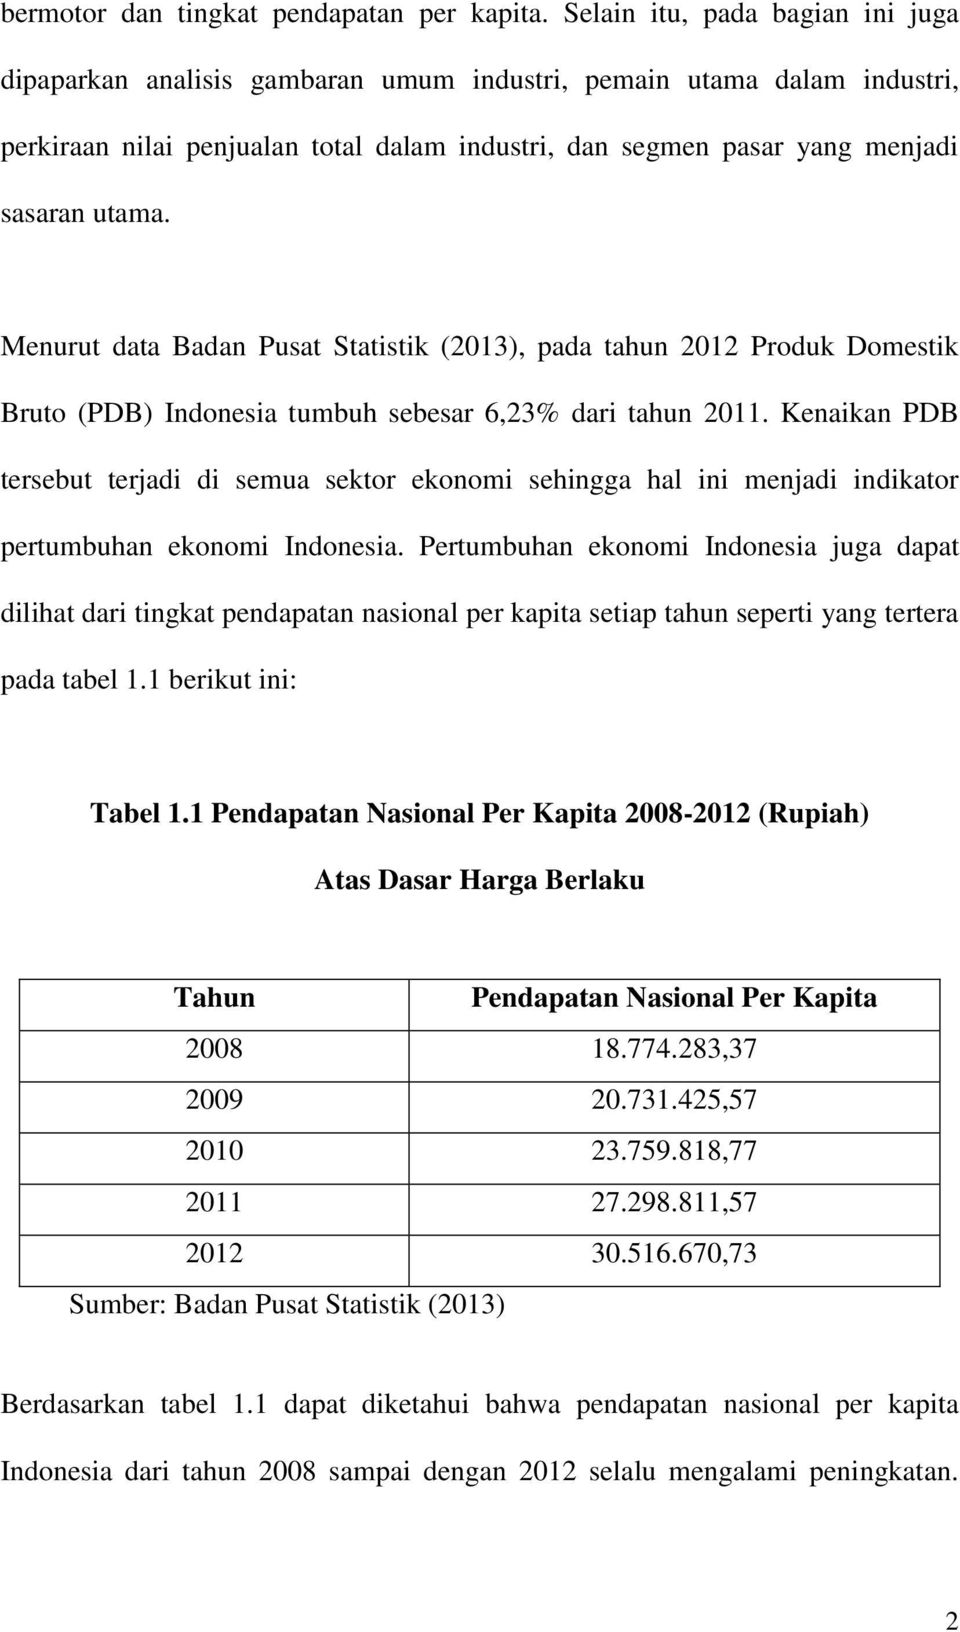 Menurut data Badan Pusat Statistik (2013), pada tahun 2012 Produk Domestik Bruto (PDB) Indonesia tumbuh sebesar 6,23% dari tahun 2011.